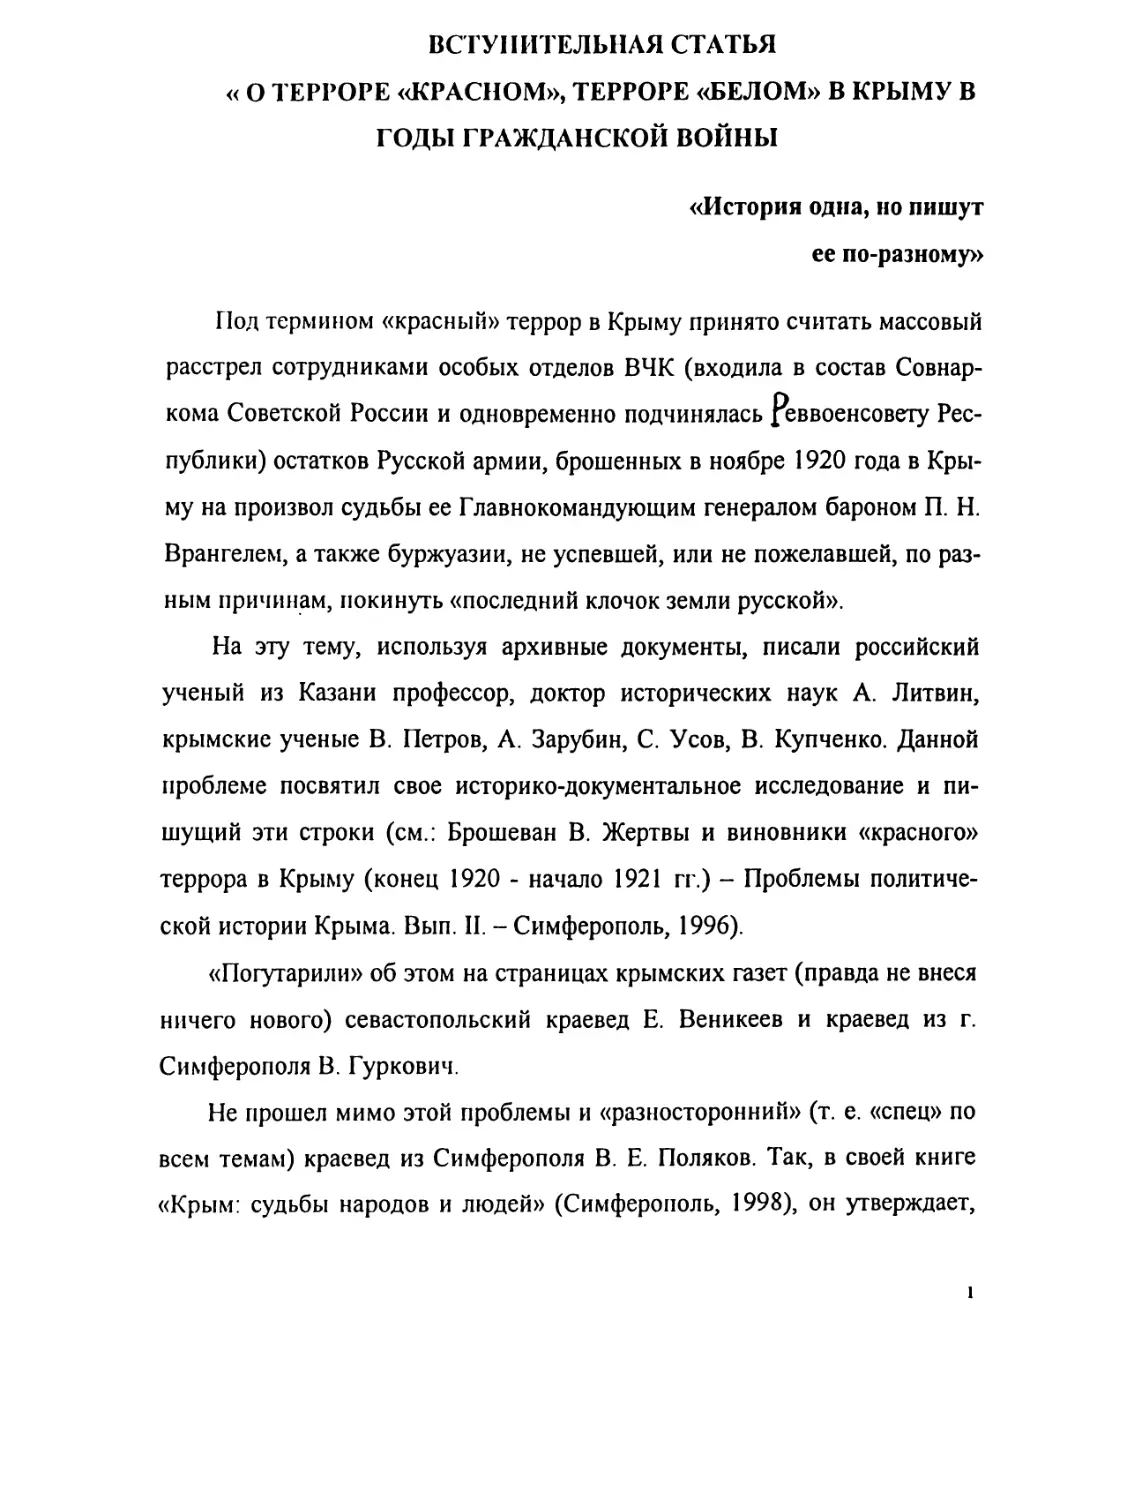 1. Вступительная статья: «О терроре «красном» и терроре «белом» в Крыму в 1918-1920 гг.»